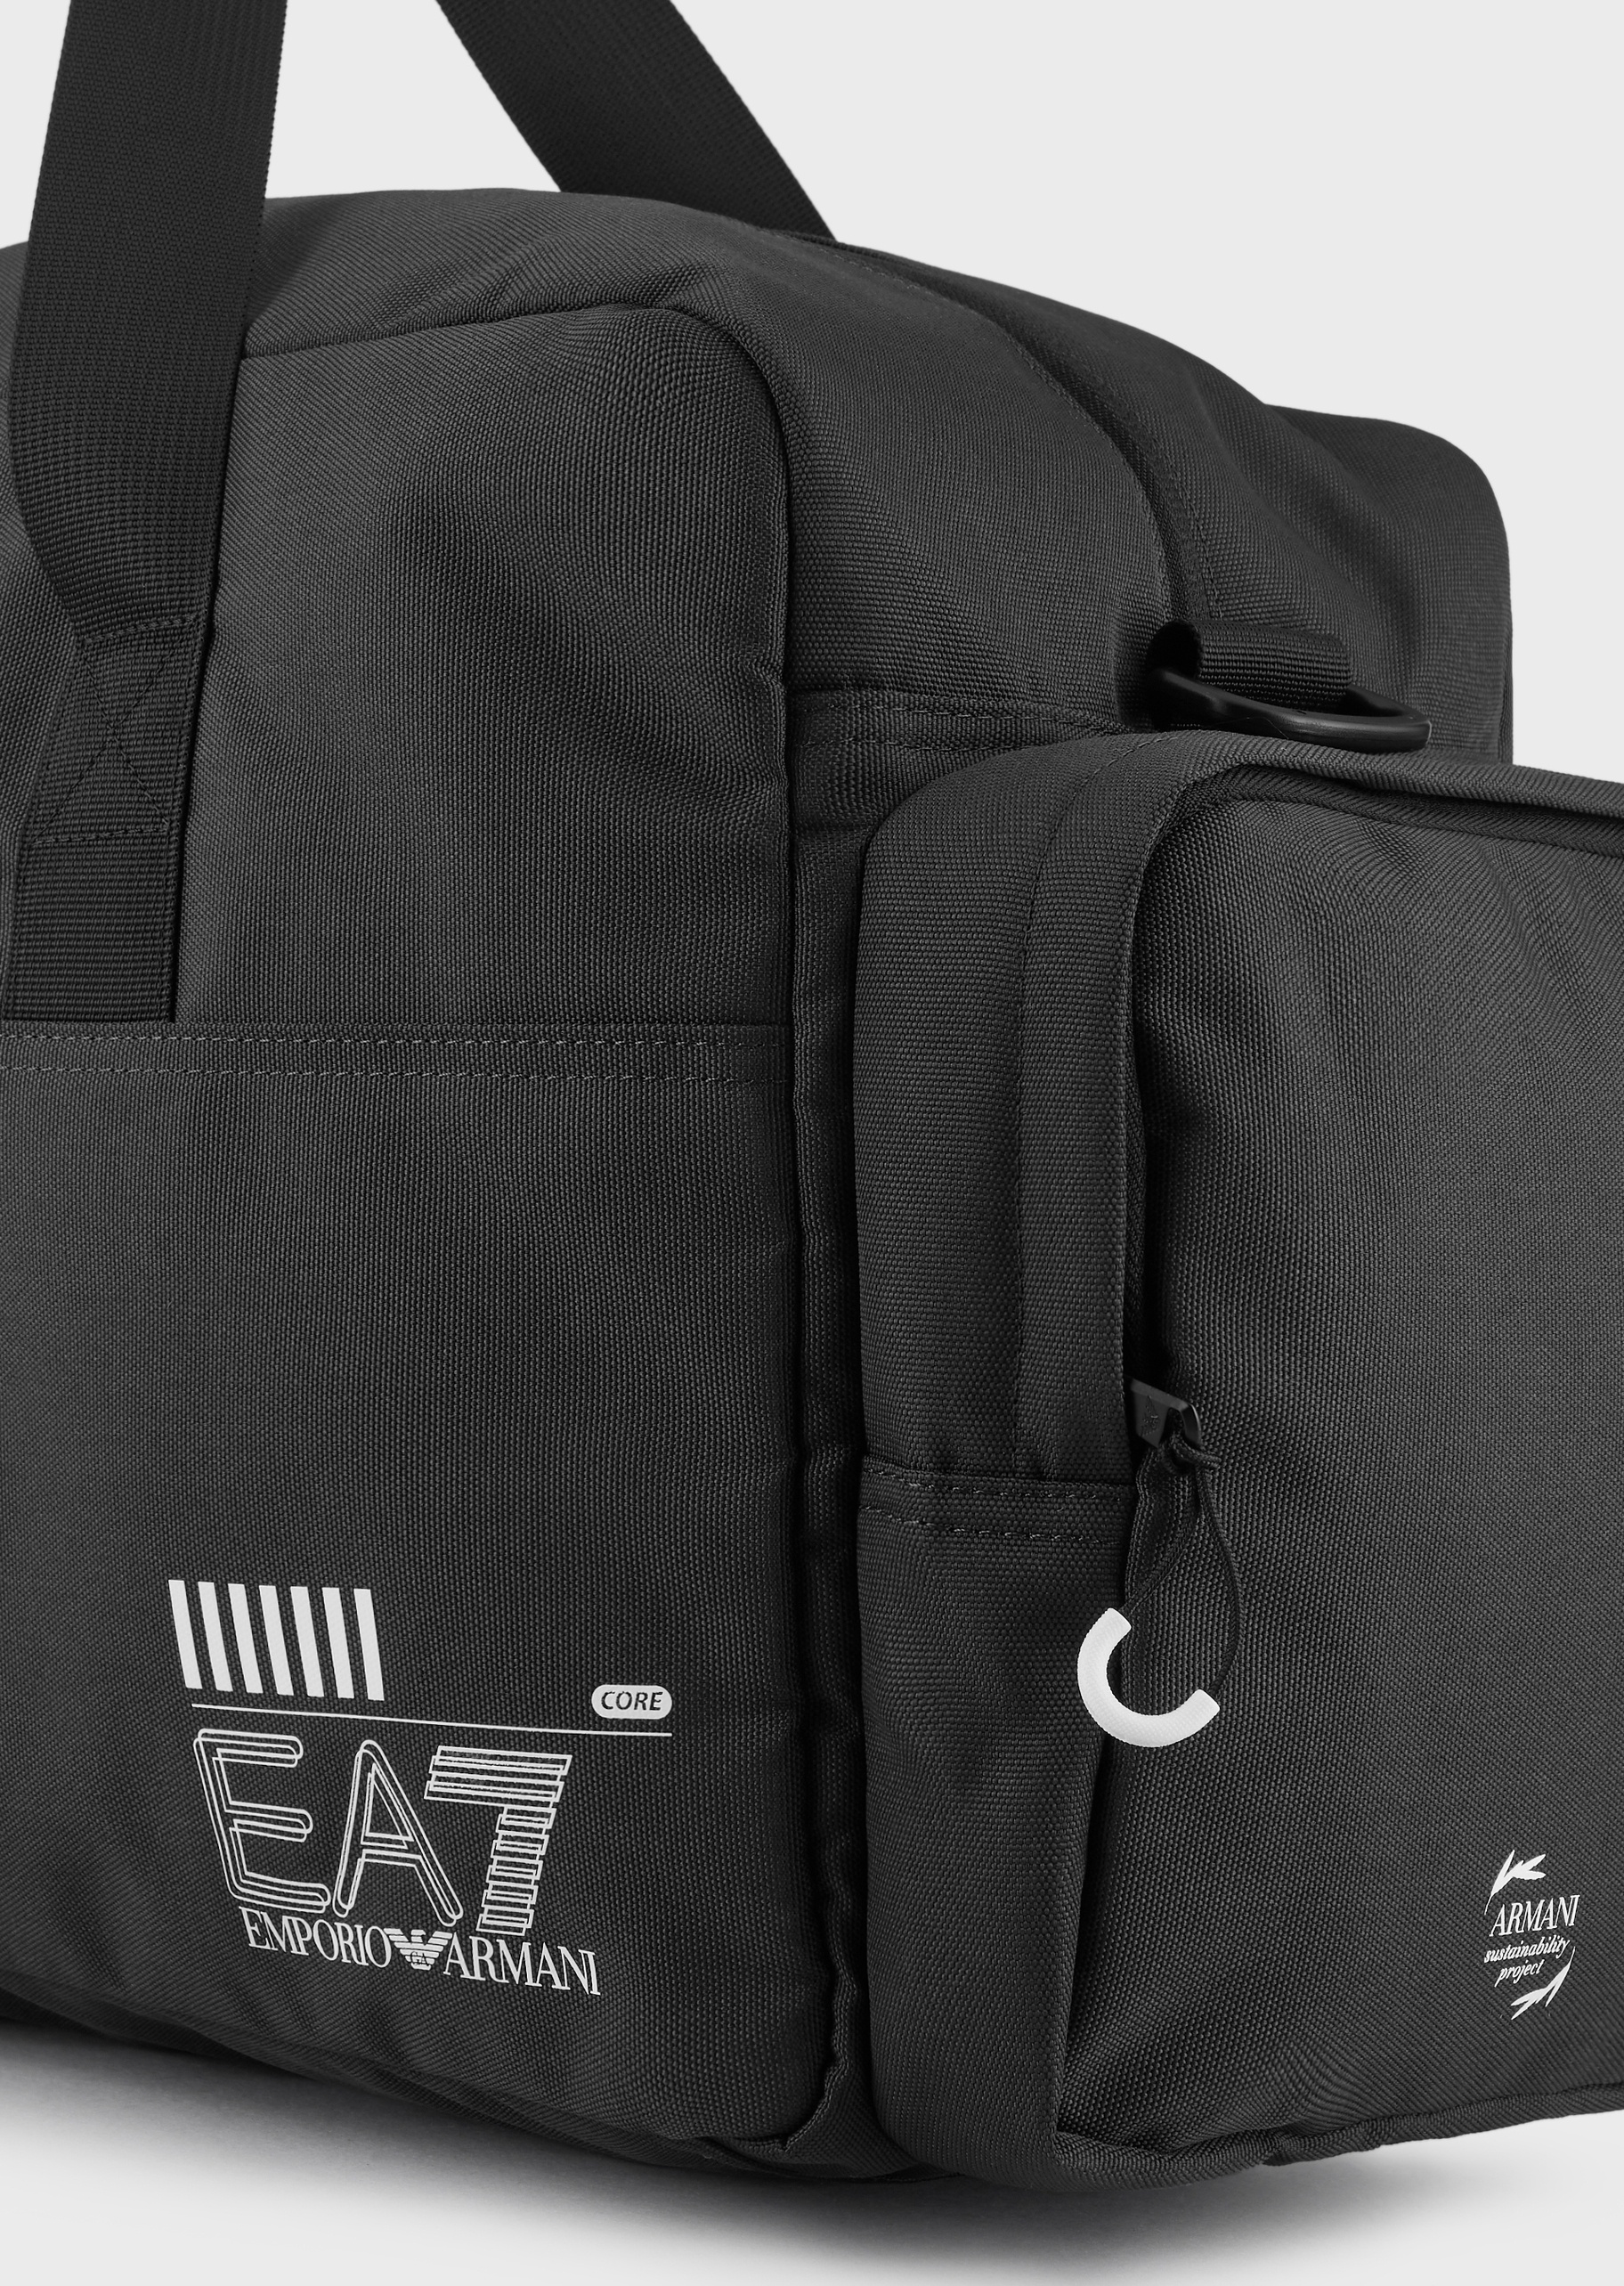 EA7 男女同款大号拉链可拆卸肩带情侣运动健身包